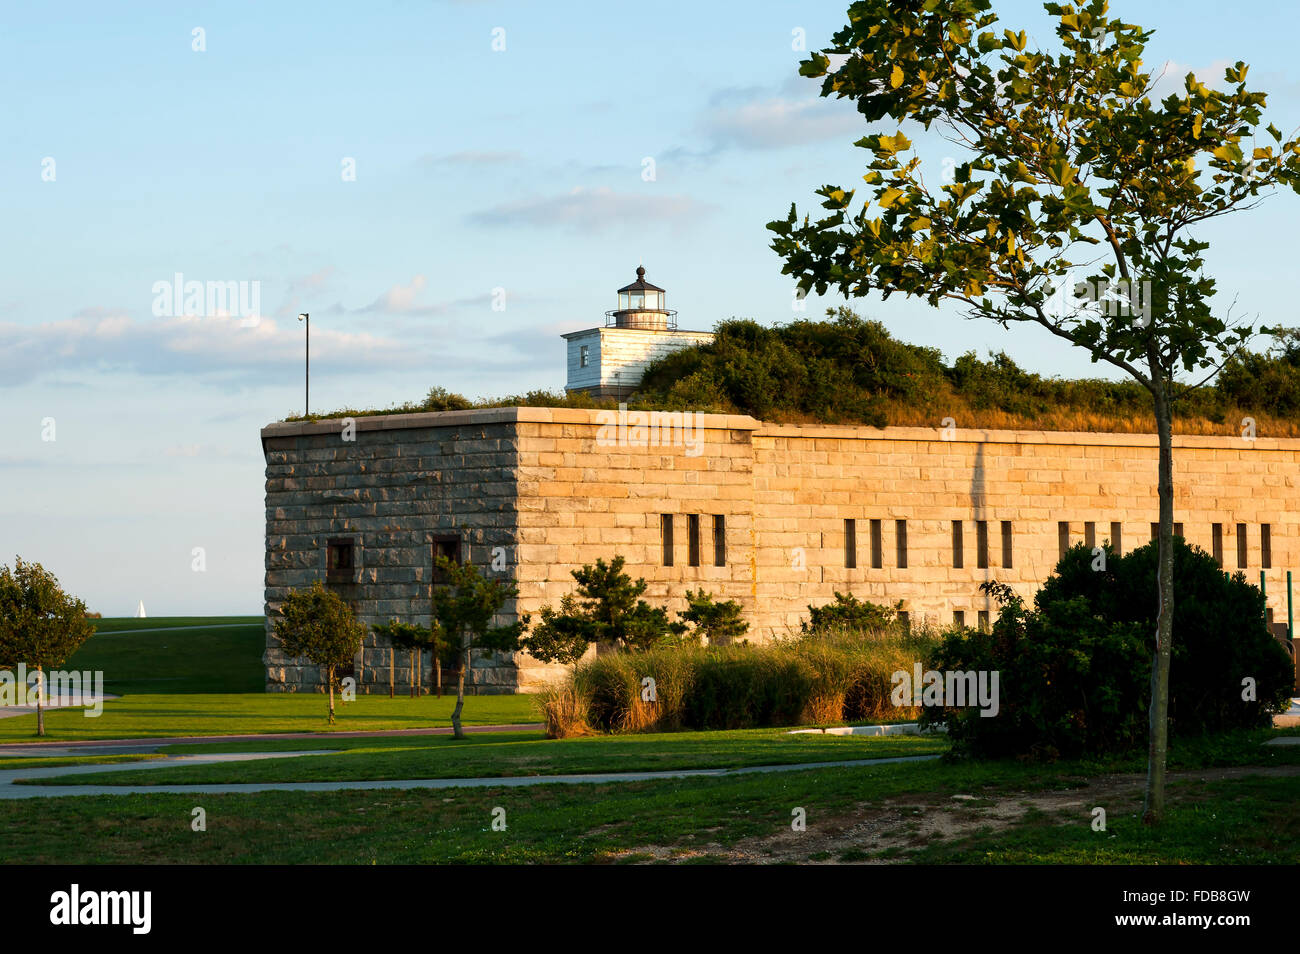 Le vieux phare tour de Clark's Point Light se dresse au sommet du Fort construit en pierre Taber au coucher du soleil, illuminant le parc dans une lumière dorée. Banque D'Images